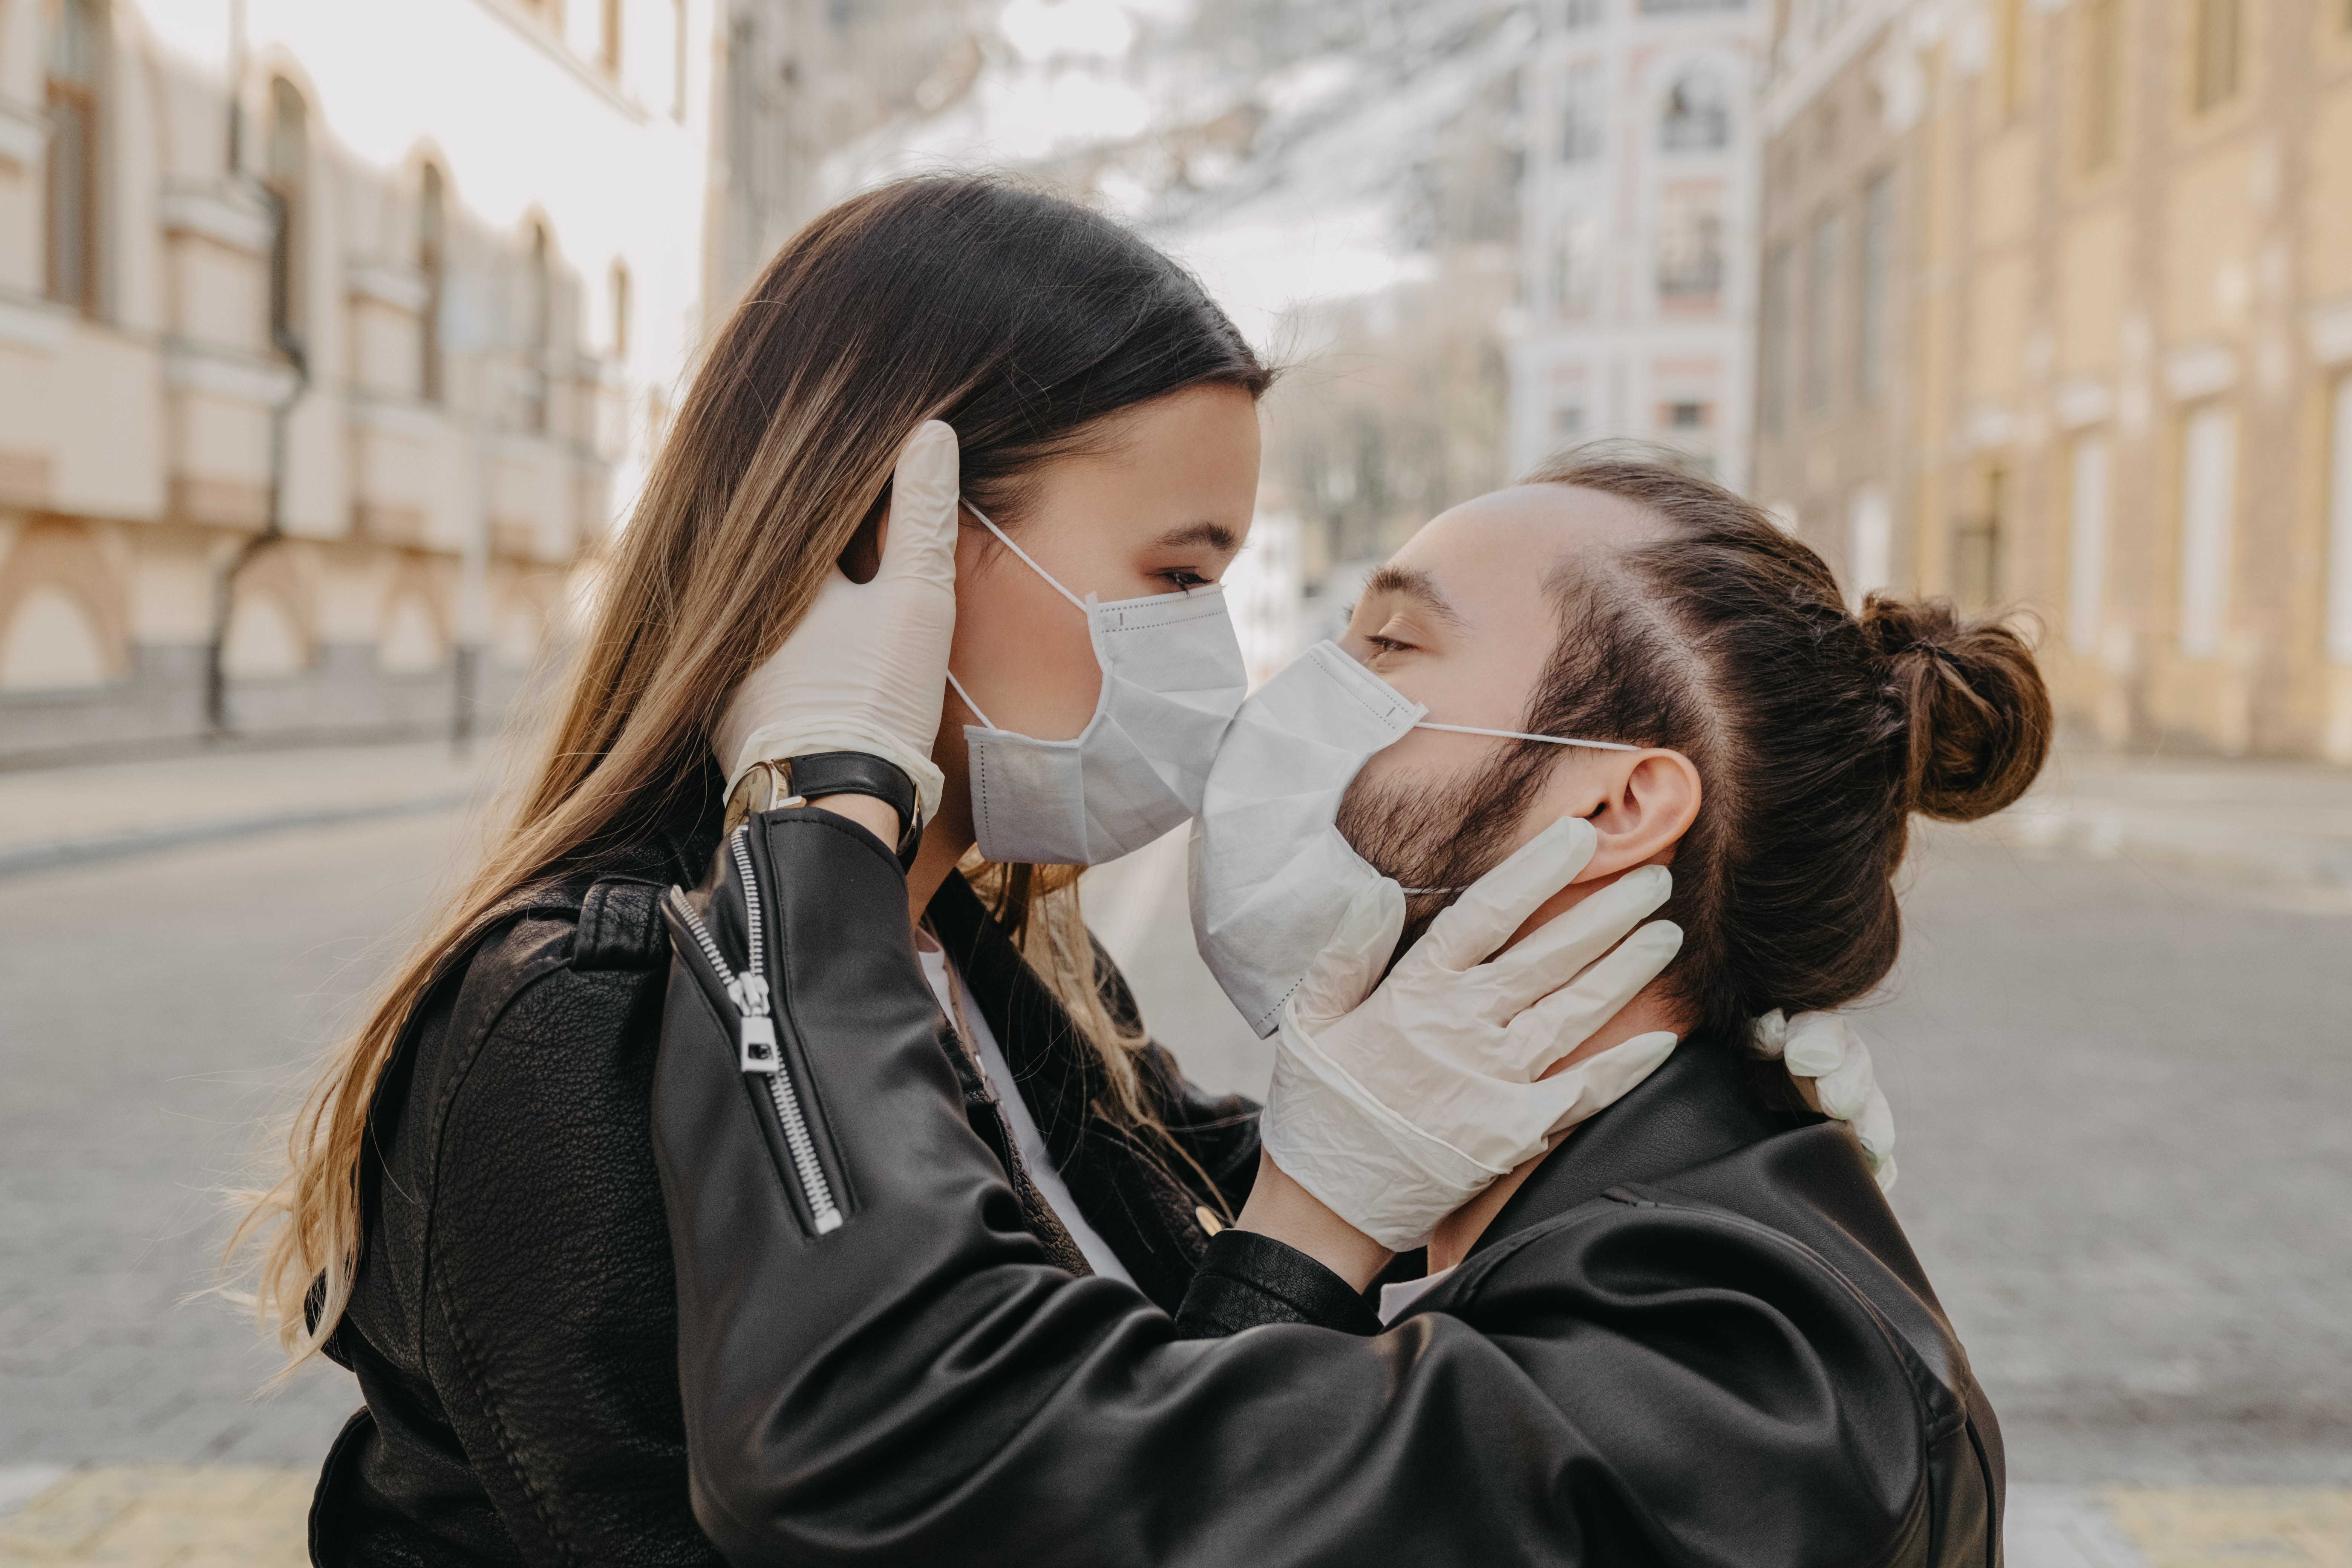 Agência de Saúde canadense indica 'buracos na parede' para prática de sexo seguro em meio a pandemia (Foto: Getty Images)